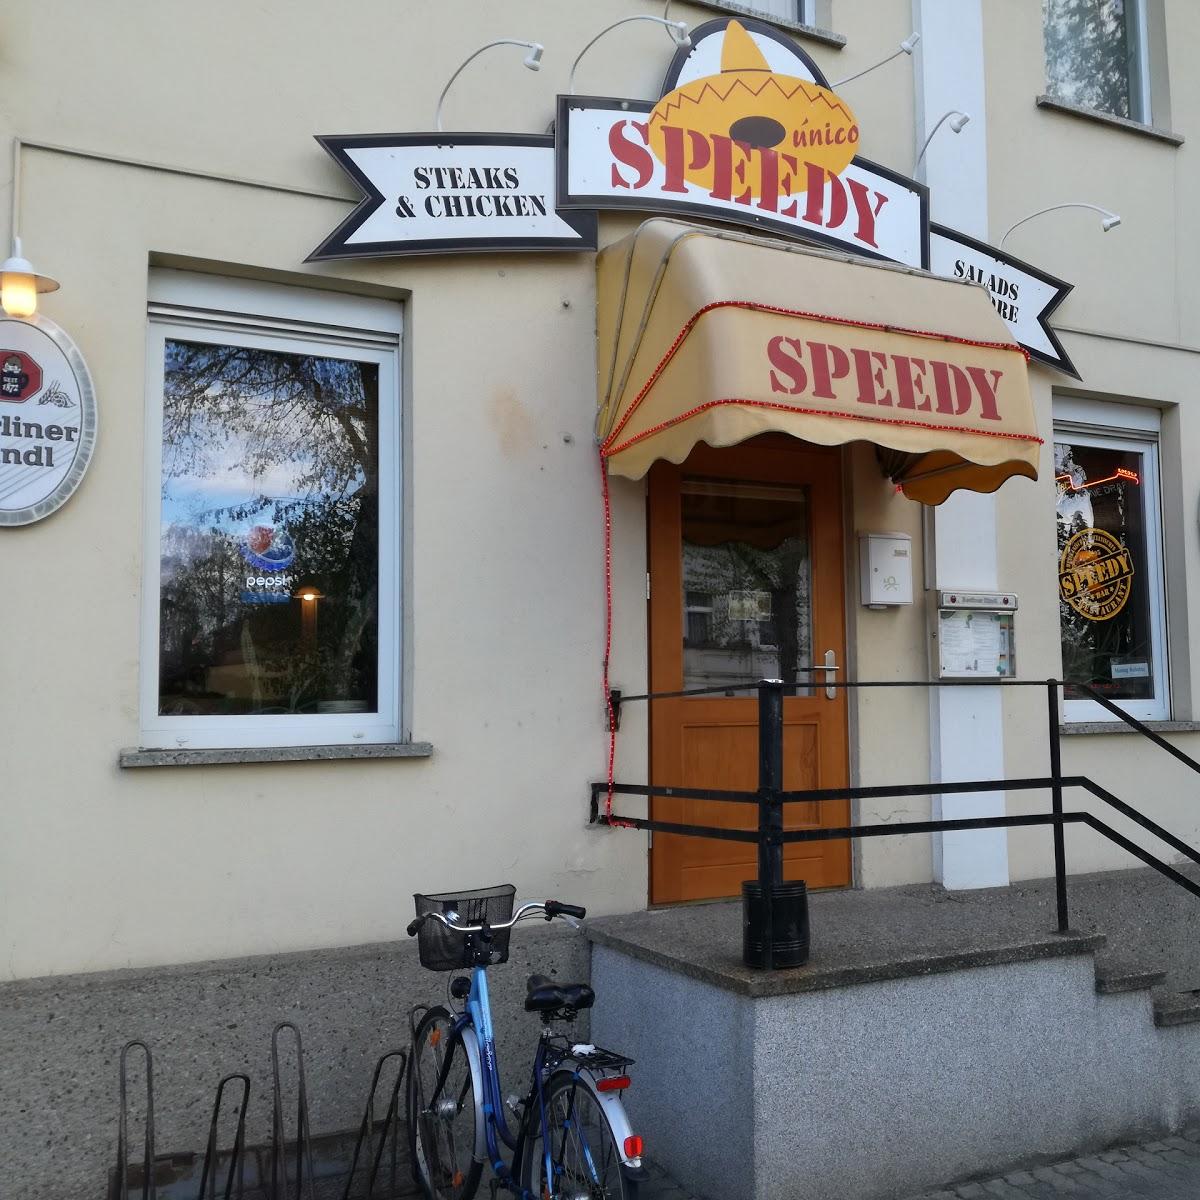 Restaurant "Speedy" in Fürstenwalde-Spree